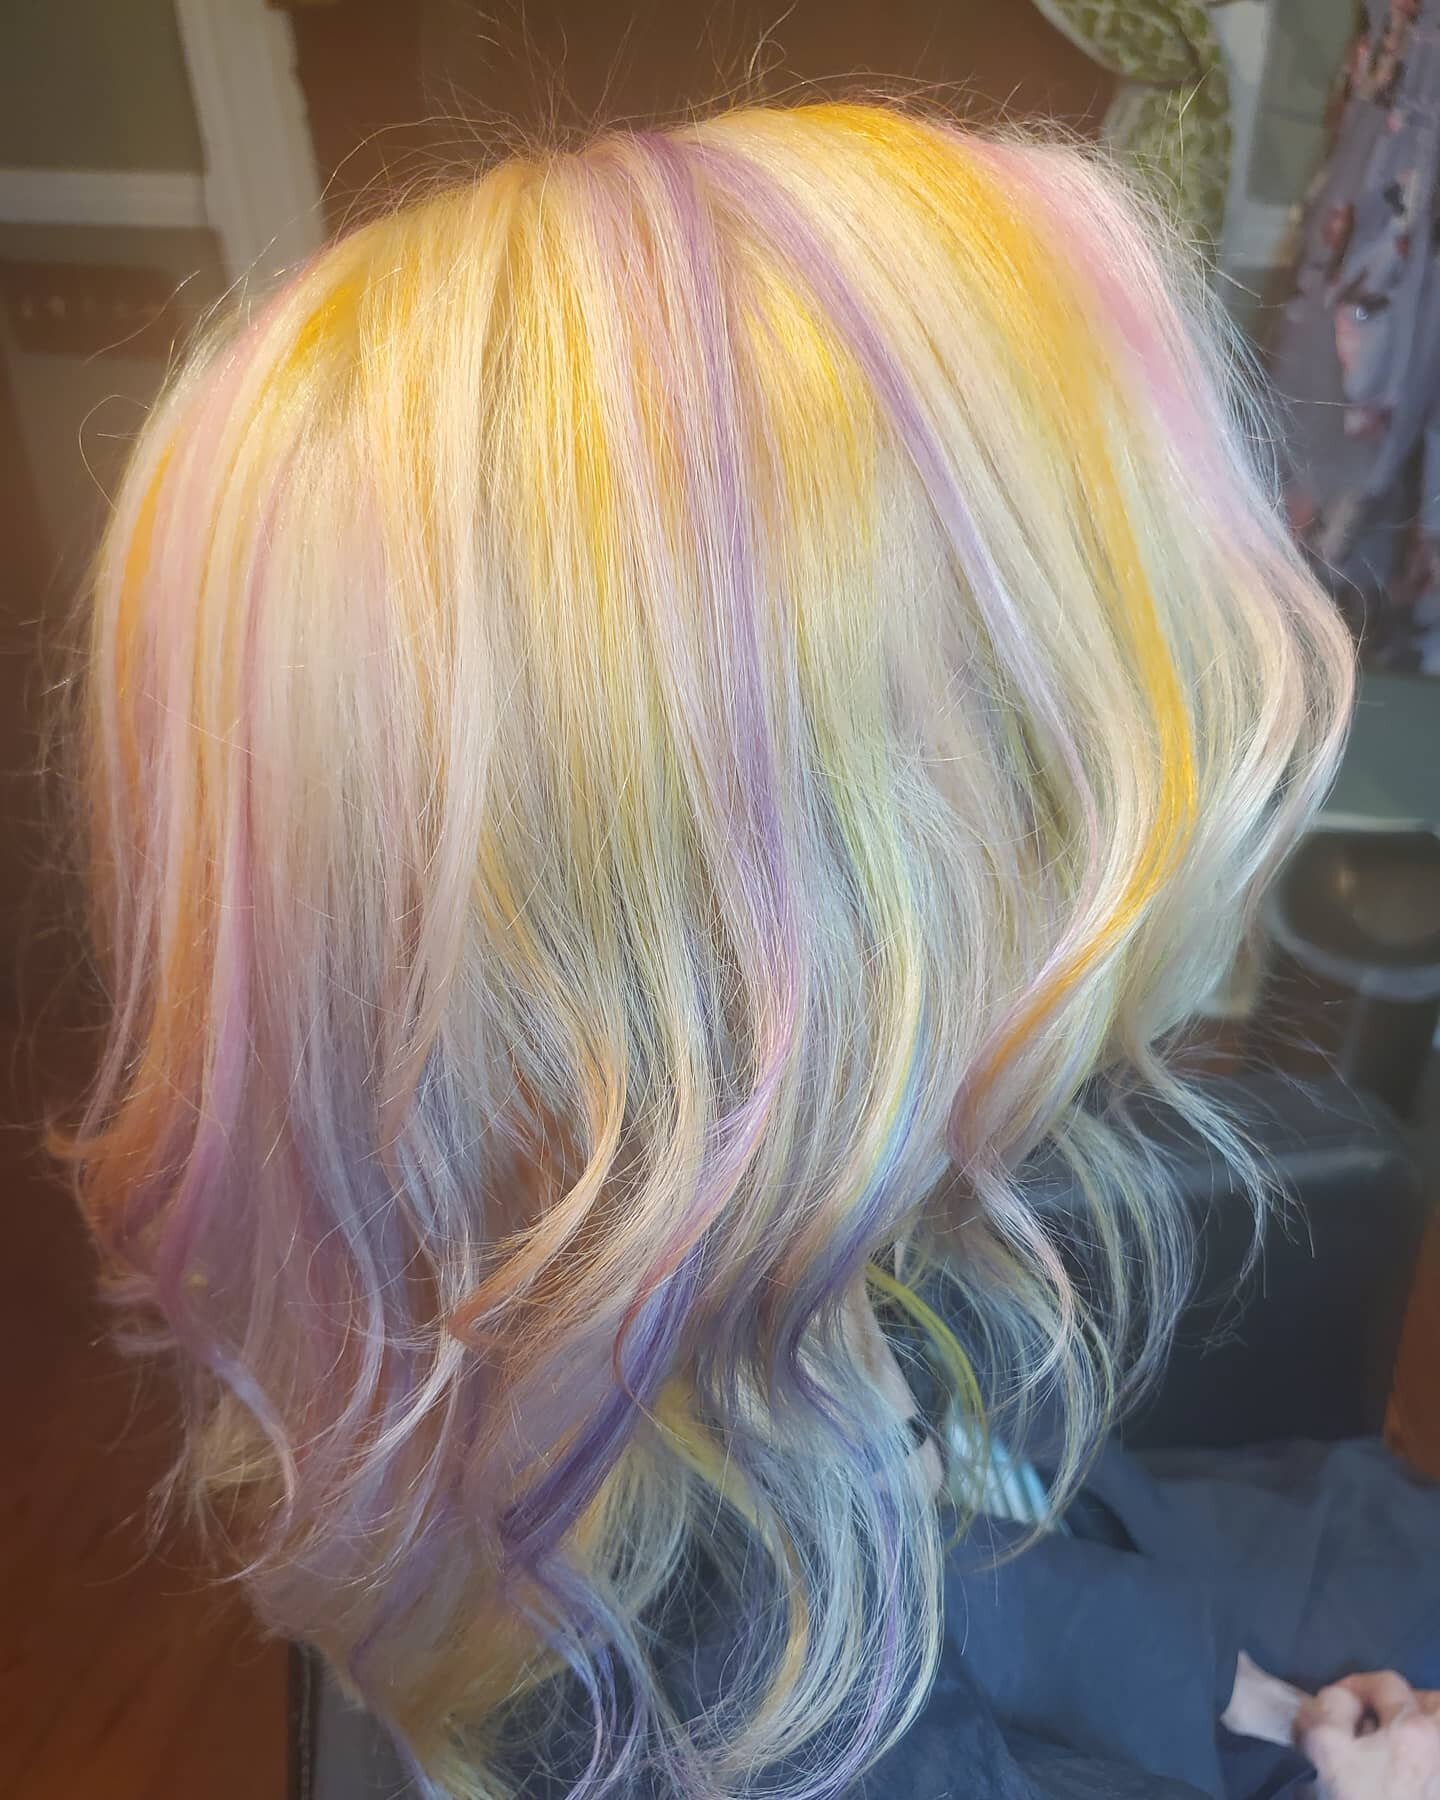 Loving this trippy rainbow hair! #HairySituation #rainbowhair #olaplex #uptownbeauty